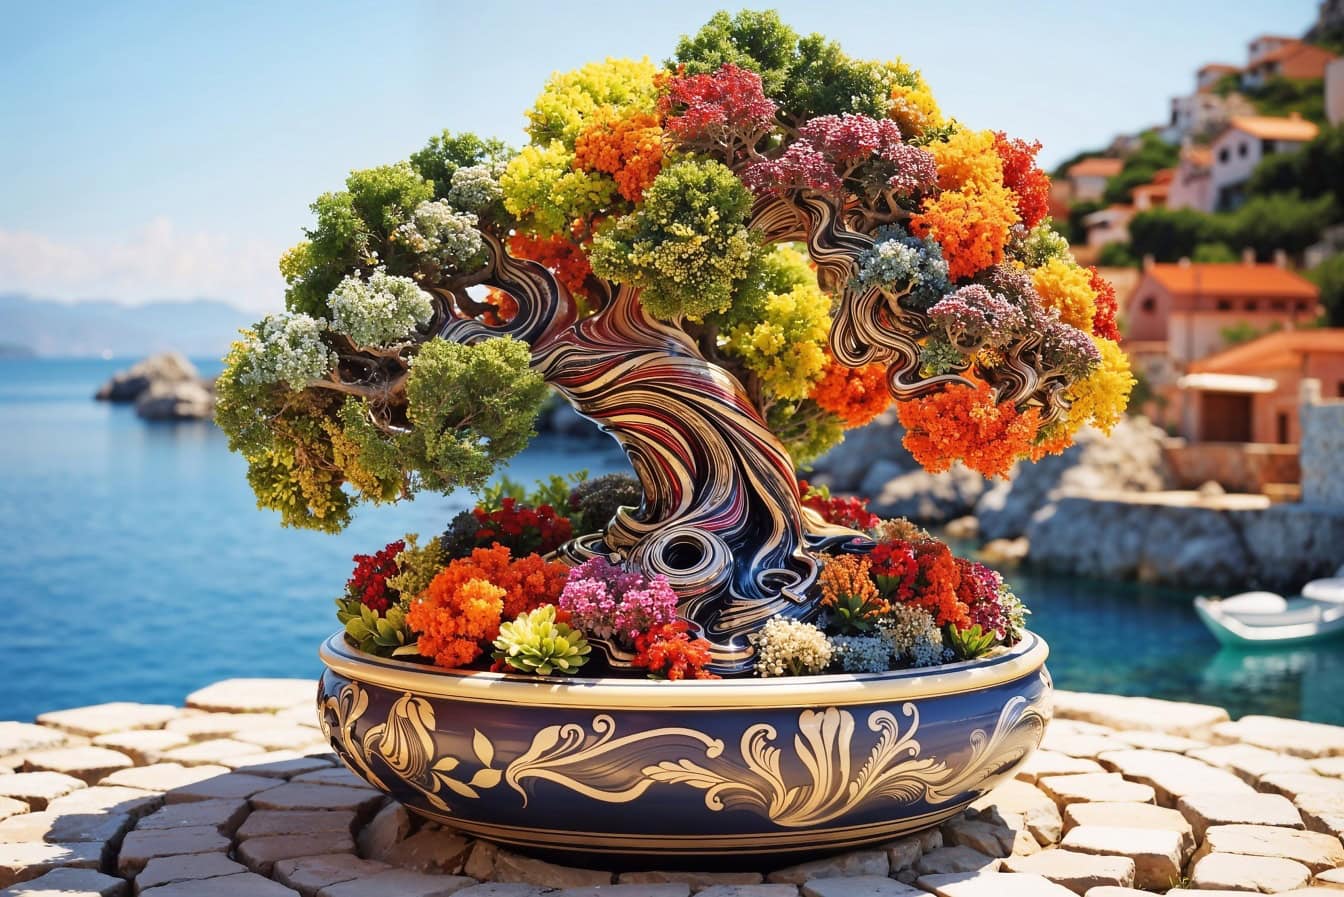 Cây bonsai trong chậu đầy màu sắc với những bông hoa sặc sỡ trong lọ hoa cổ